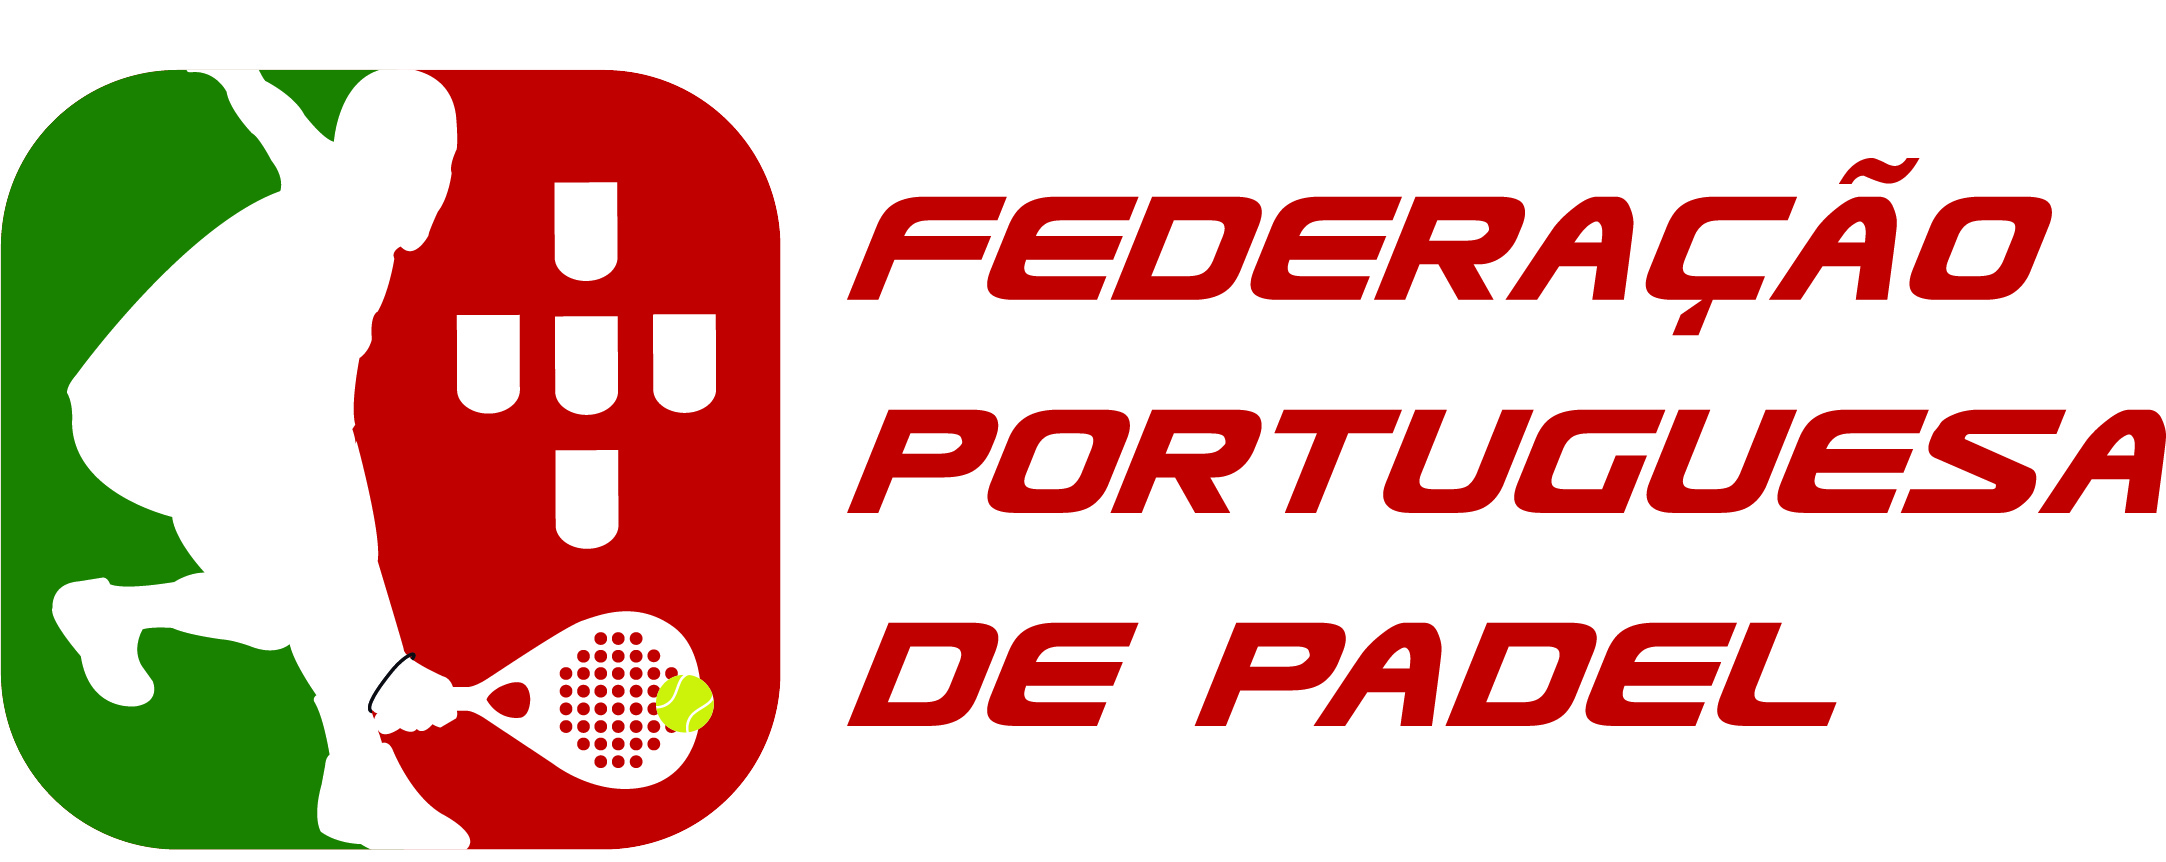 Federação Portuguesa de Padel